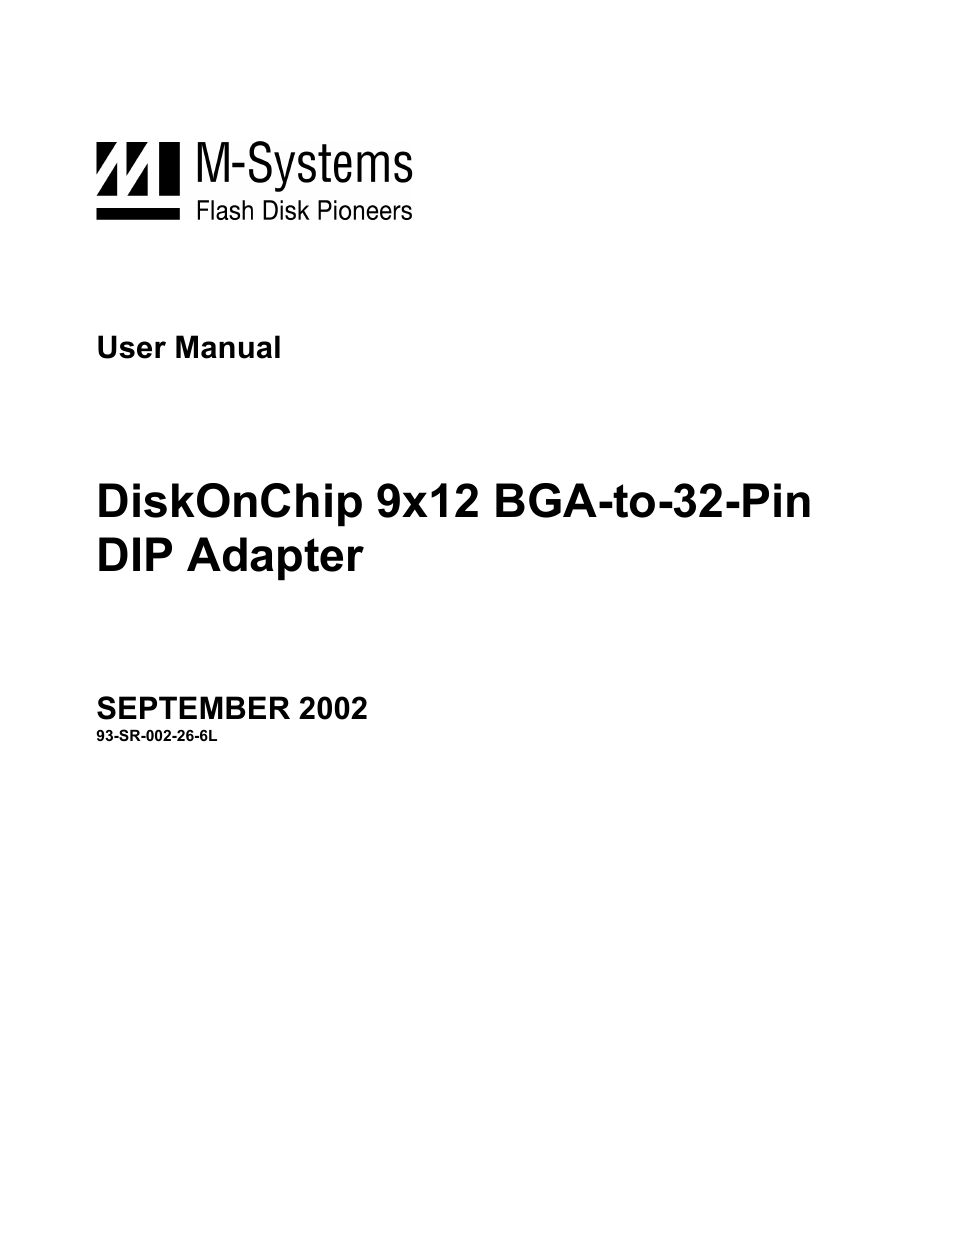 DiskOnChip 9x12 BGA-to-32-Pin DIP Adapter